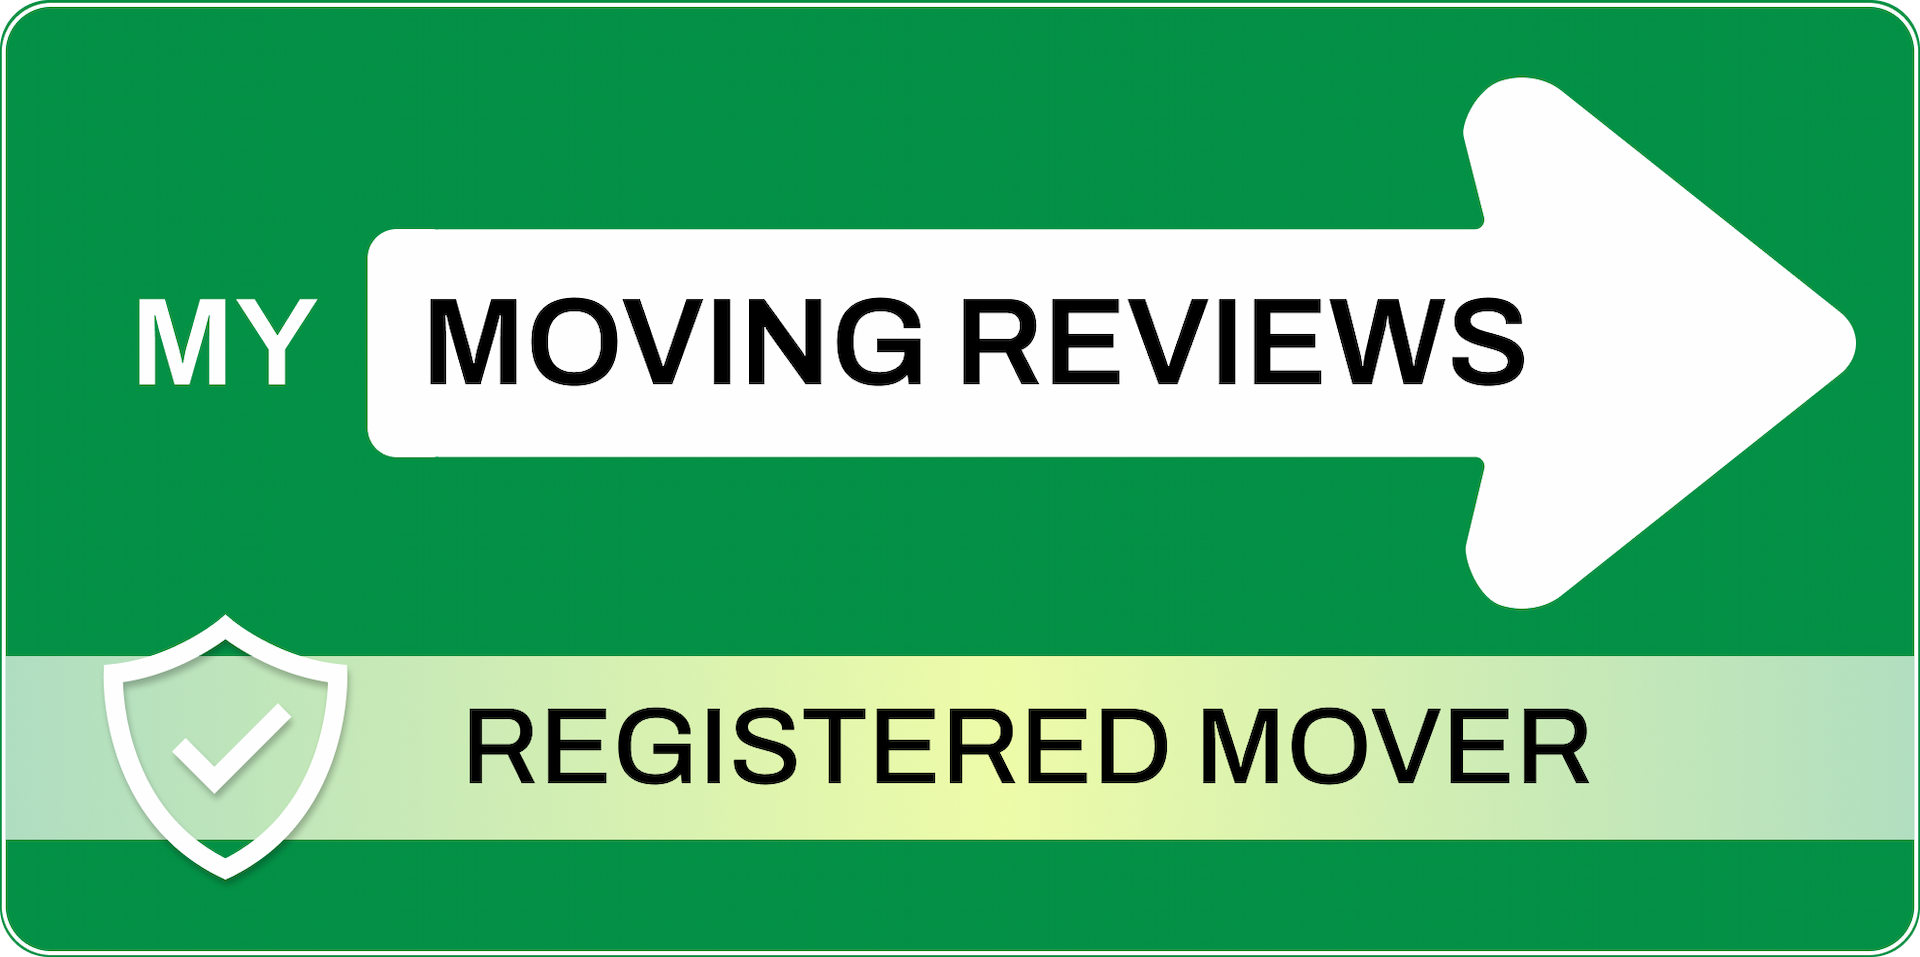 MyMovingReviews - Registered Mover